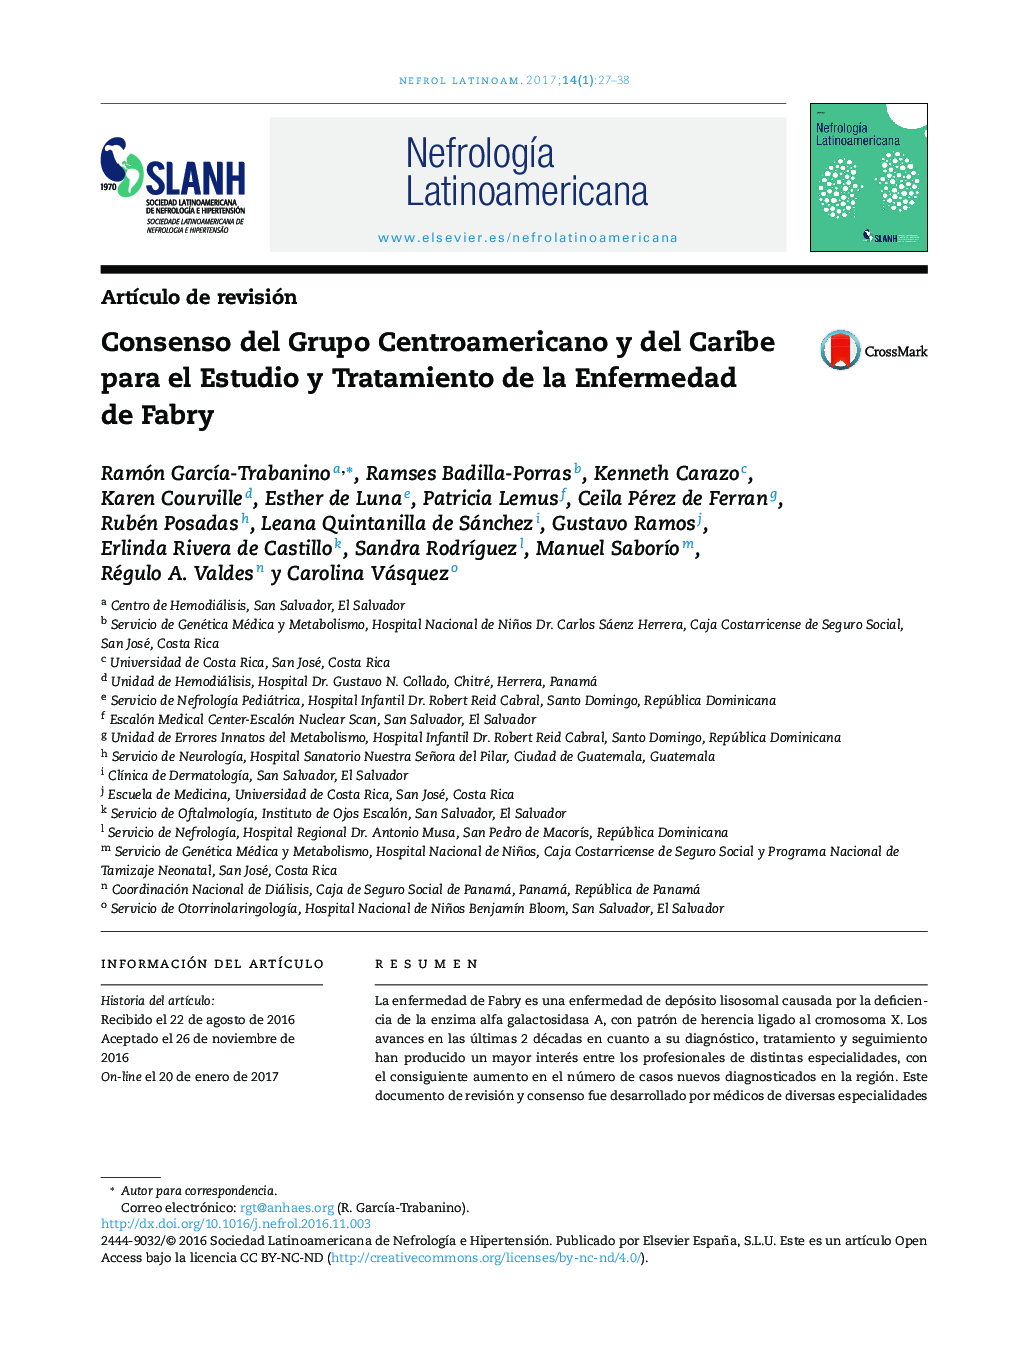 Consenso del Grupo Centroamericano y del Caribe para el Estudio y Tratamiento de la Enfermedad de Fabry